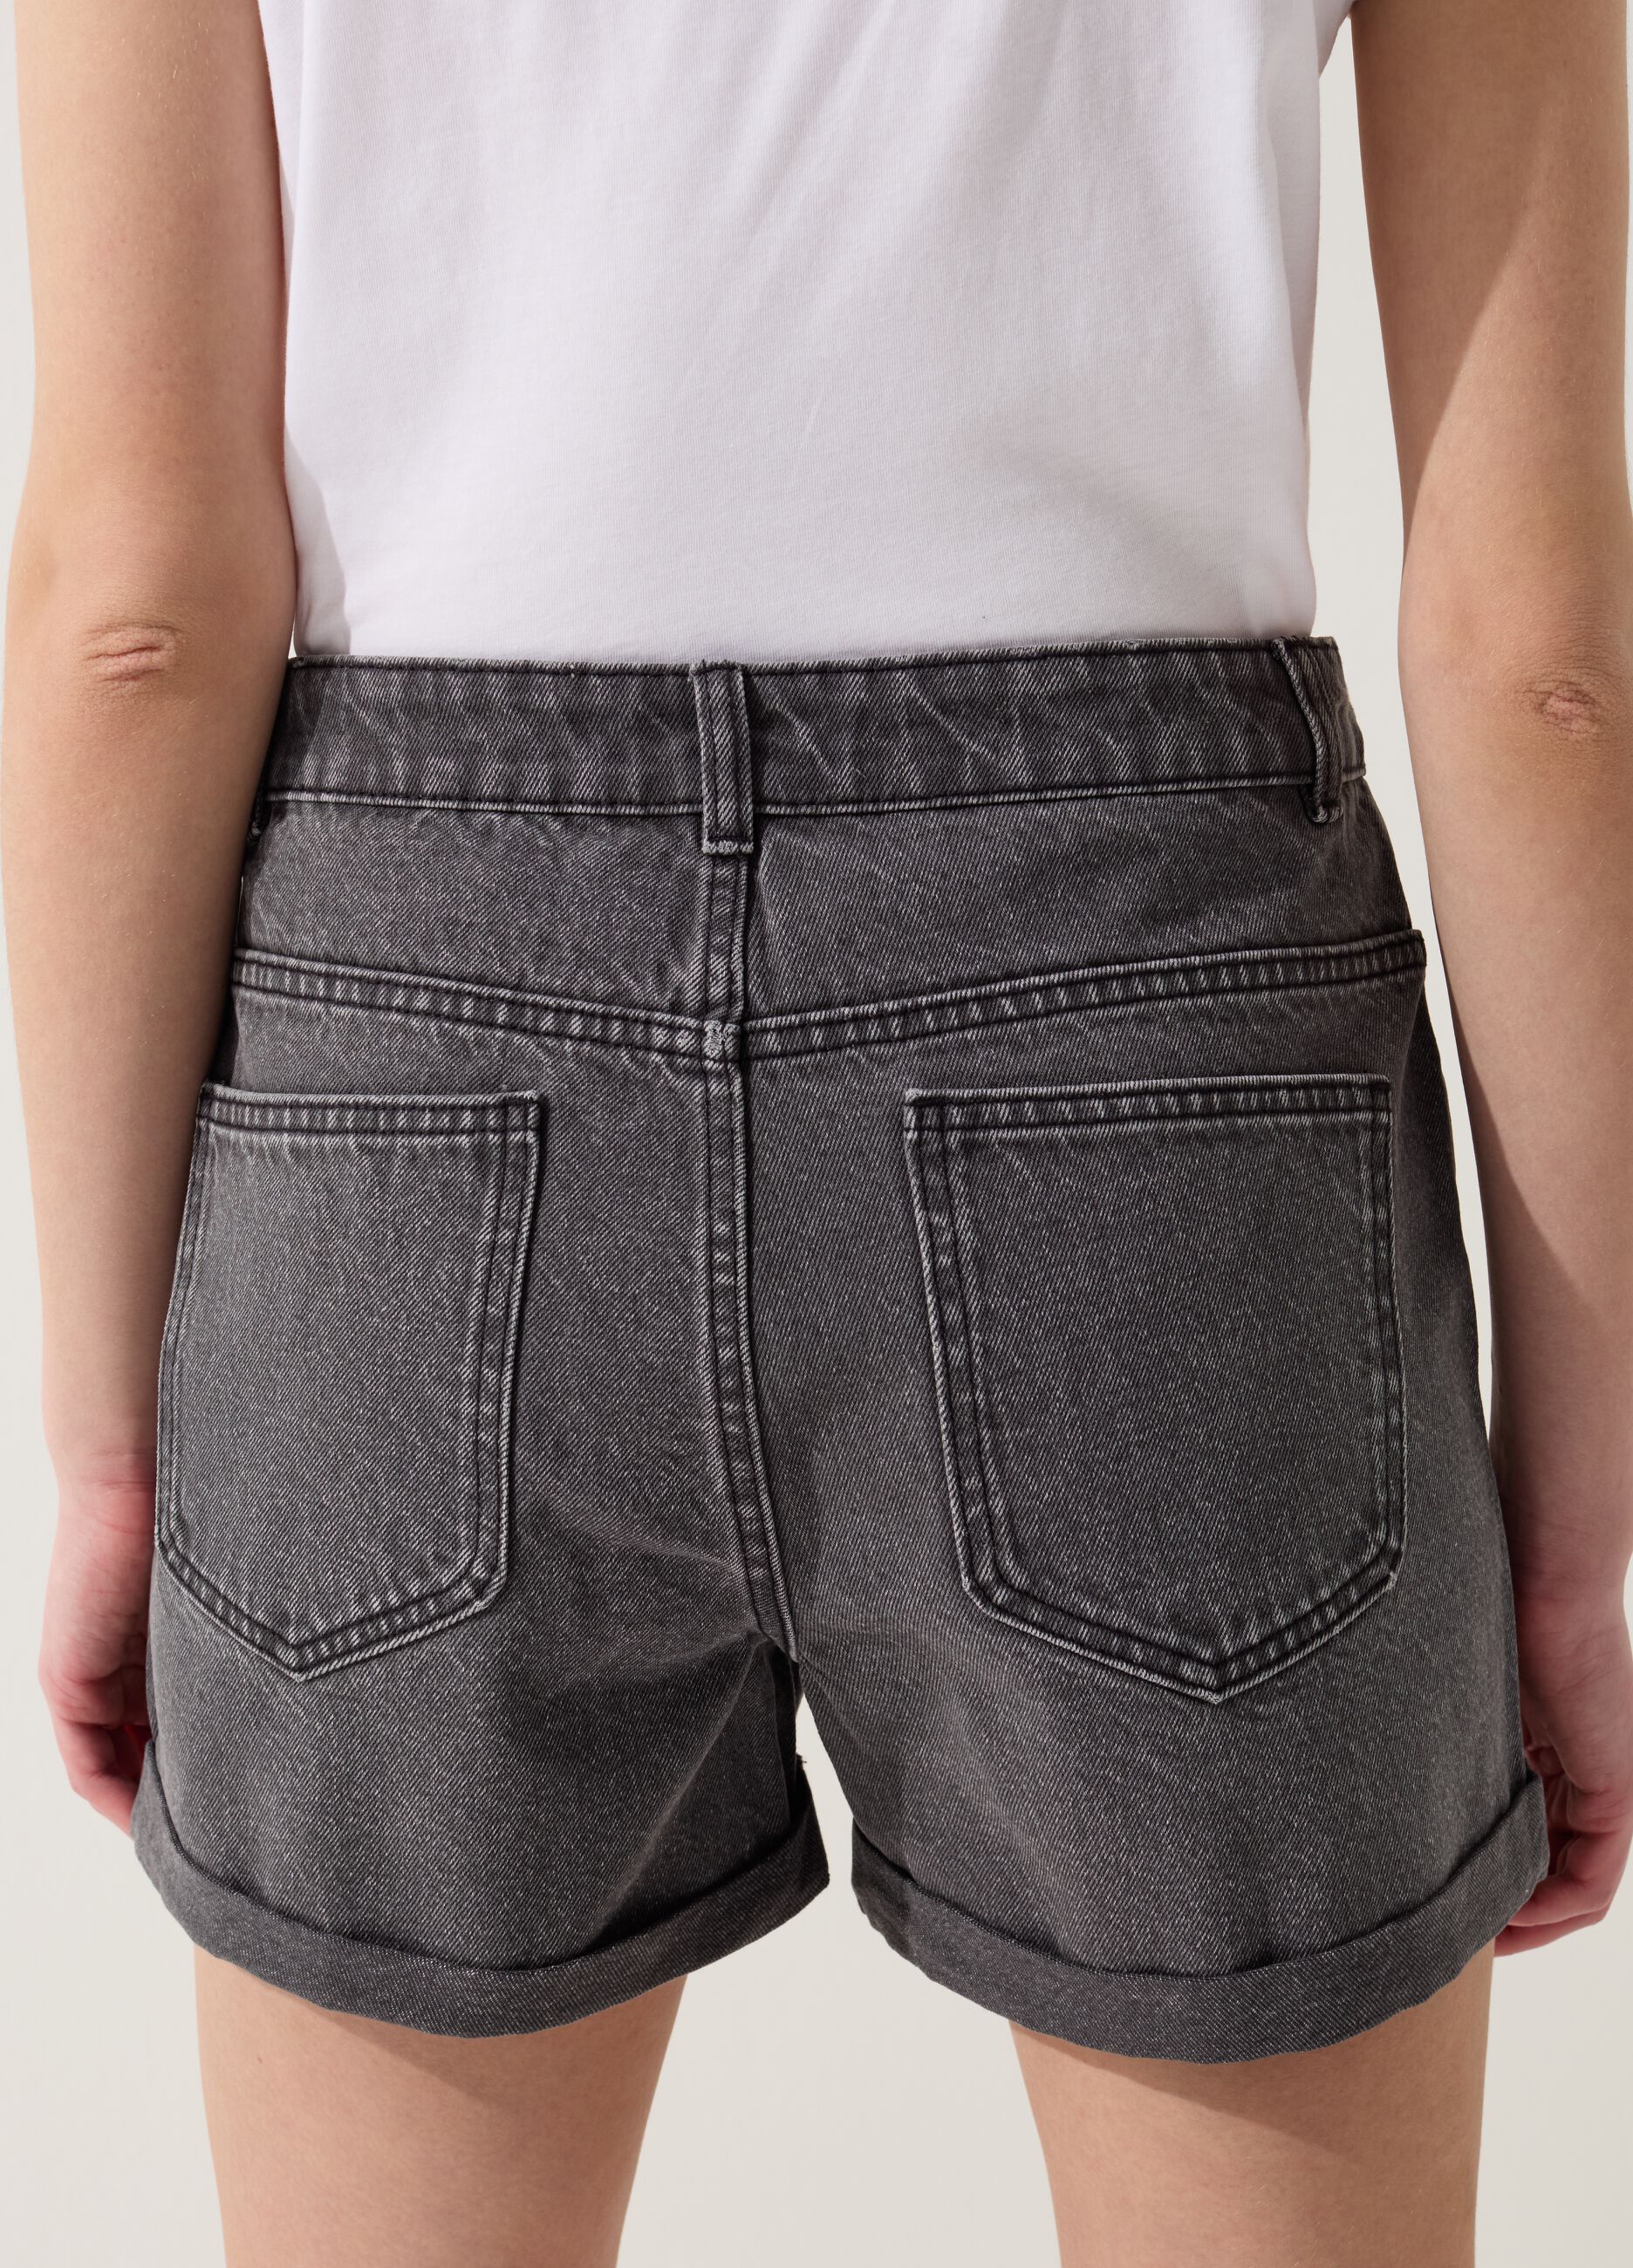 Mum-fit shorts in denim